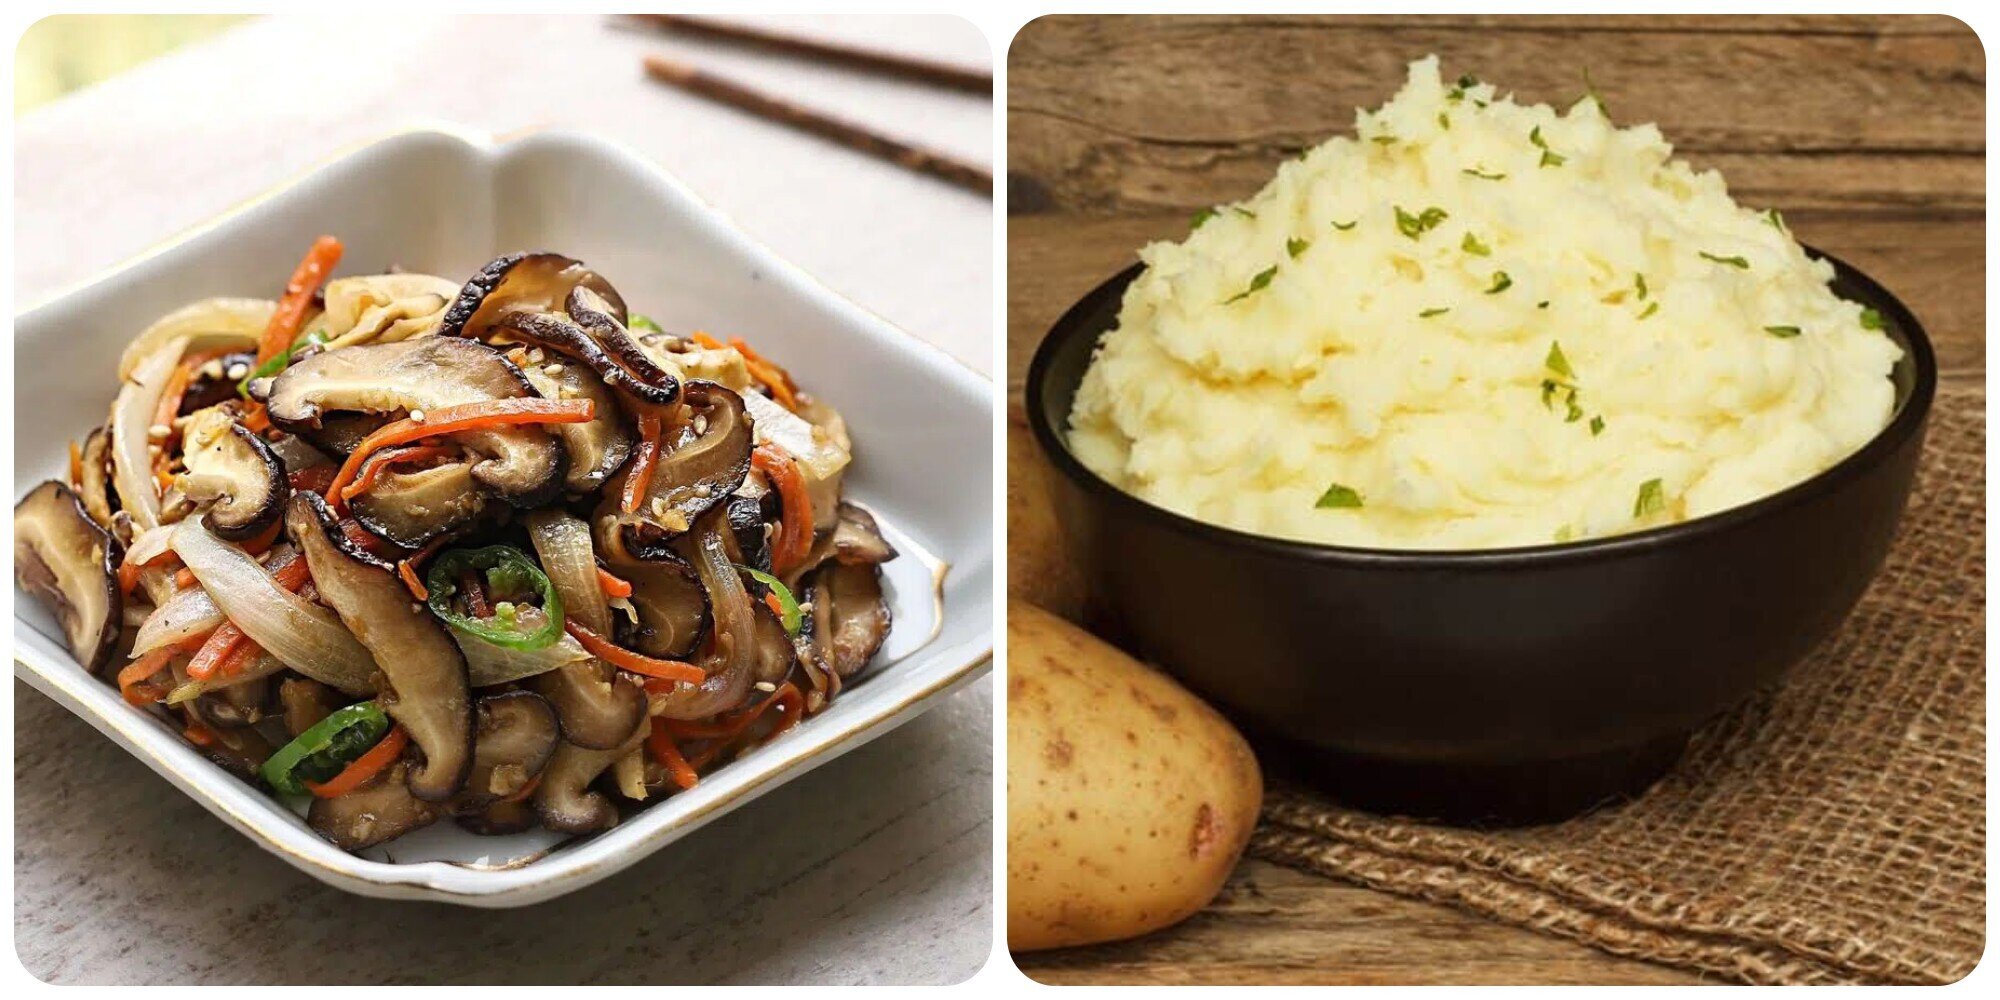 Nấm và khoai tây là hai thực phẩm rất tốt cho sức khoẻ